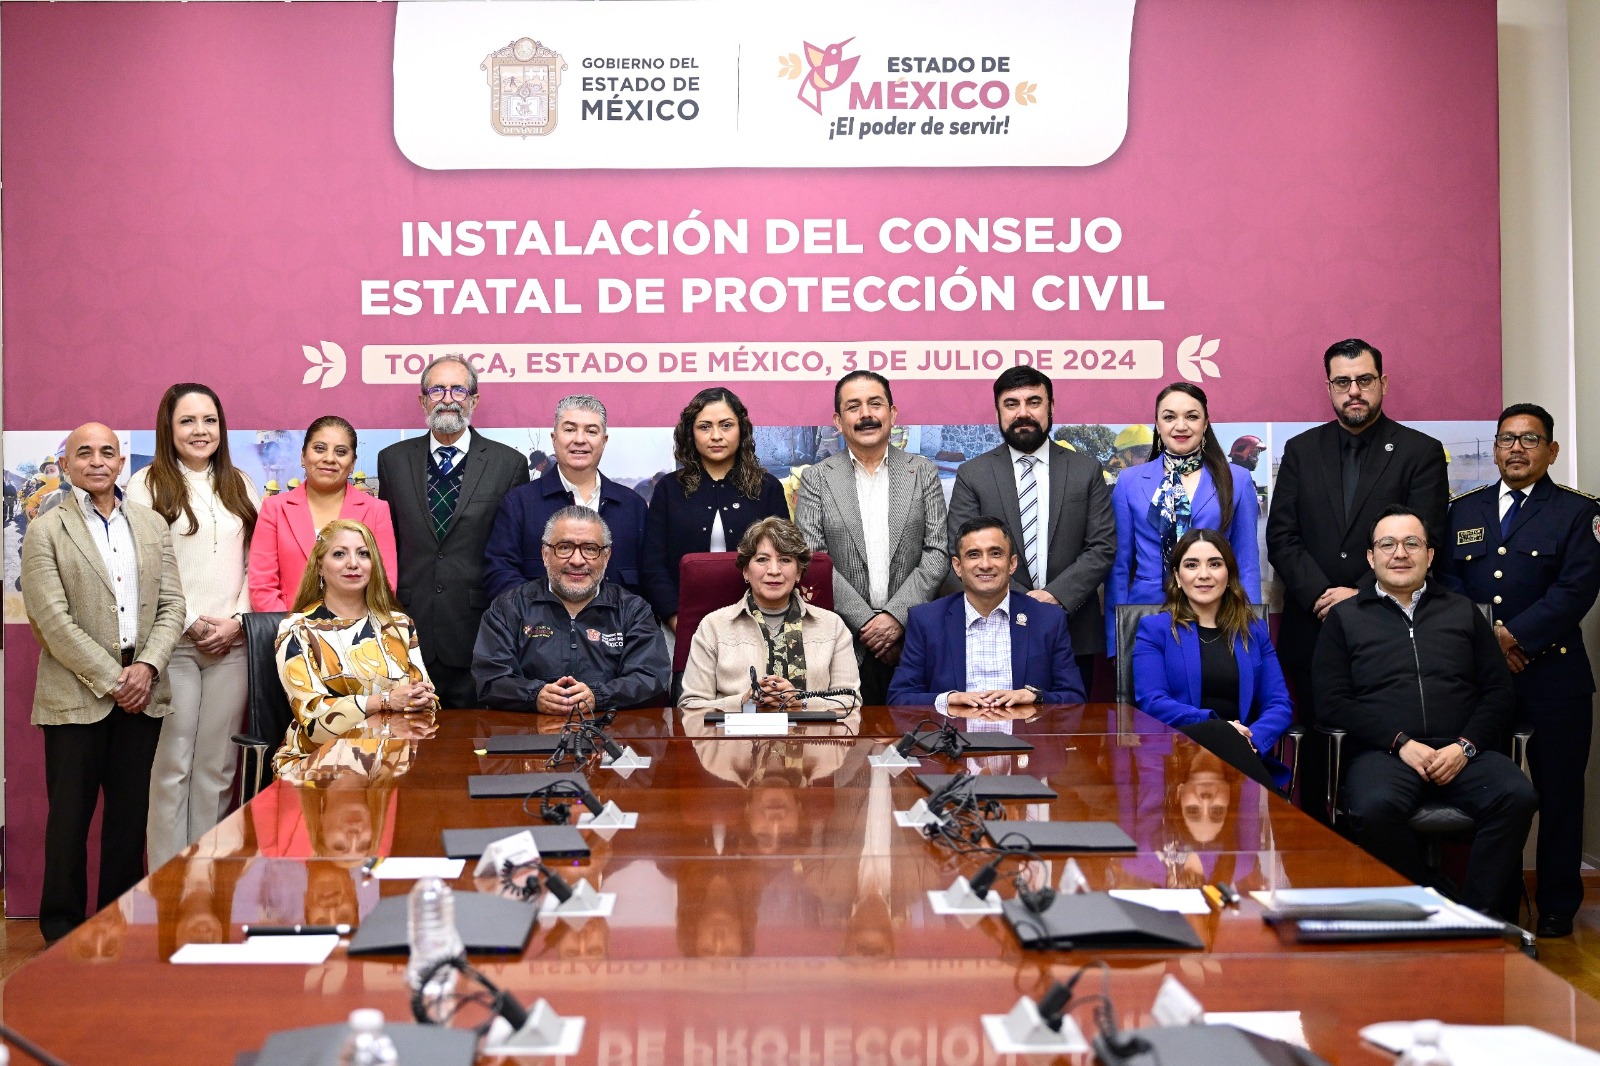 Se creará una red interinstitucional para garantizar la seguridad y el bienestar de la población mexiquense a través de la gestión de riesgos.